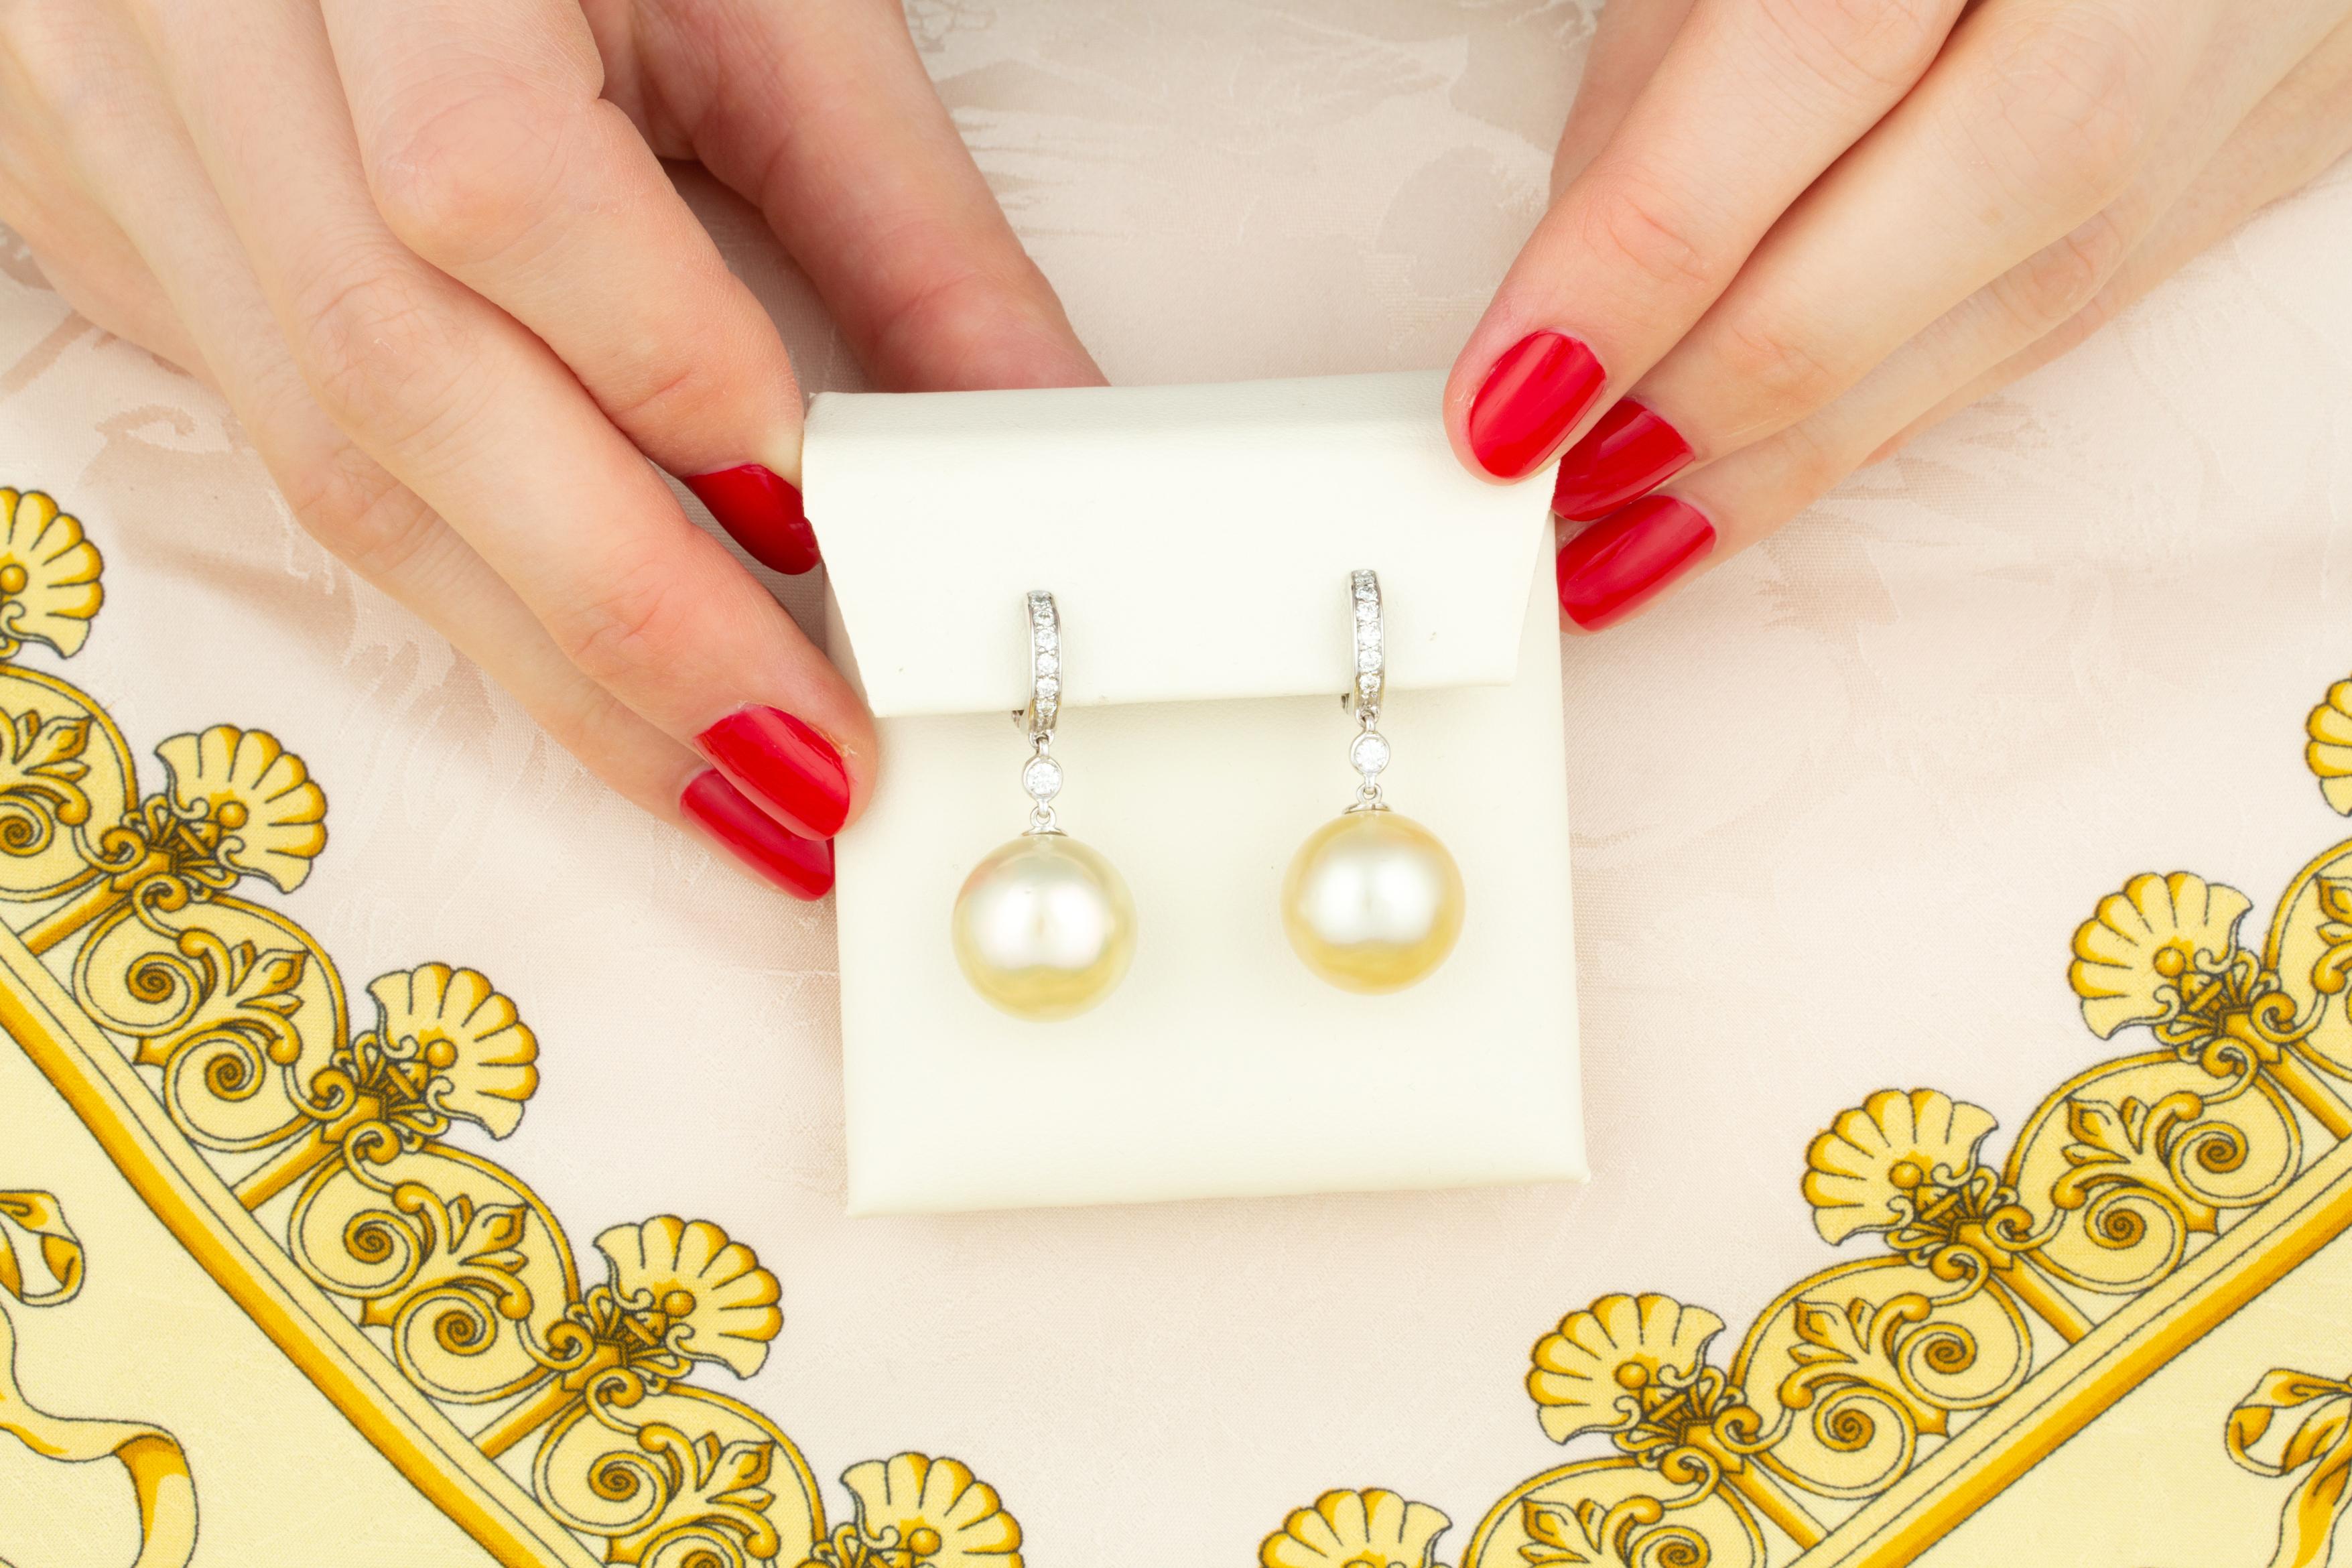 Les boucles d'oreilles pendantes en perles d'or et diamants sont composées de deux perles de 14,5 mm de diamètre, d'une nacre de qualité, d'un bel éclat et d'une belle couleur champagne.
Les perles sont suspendues à des anneaux sertis de diamants